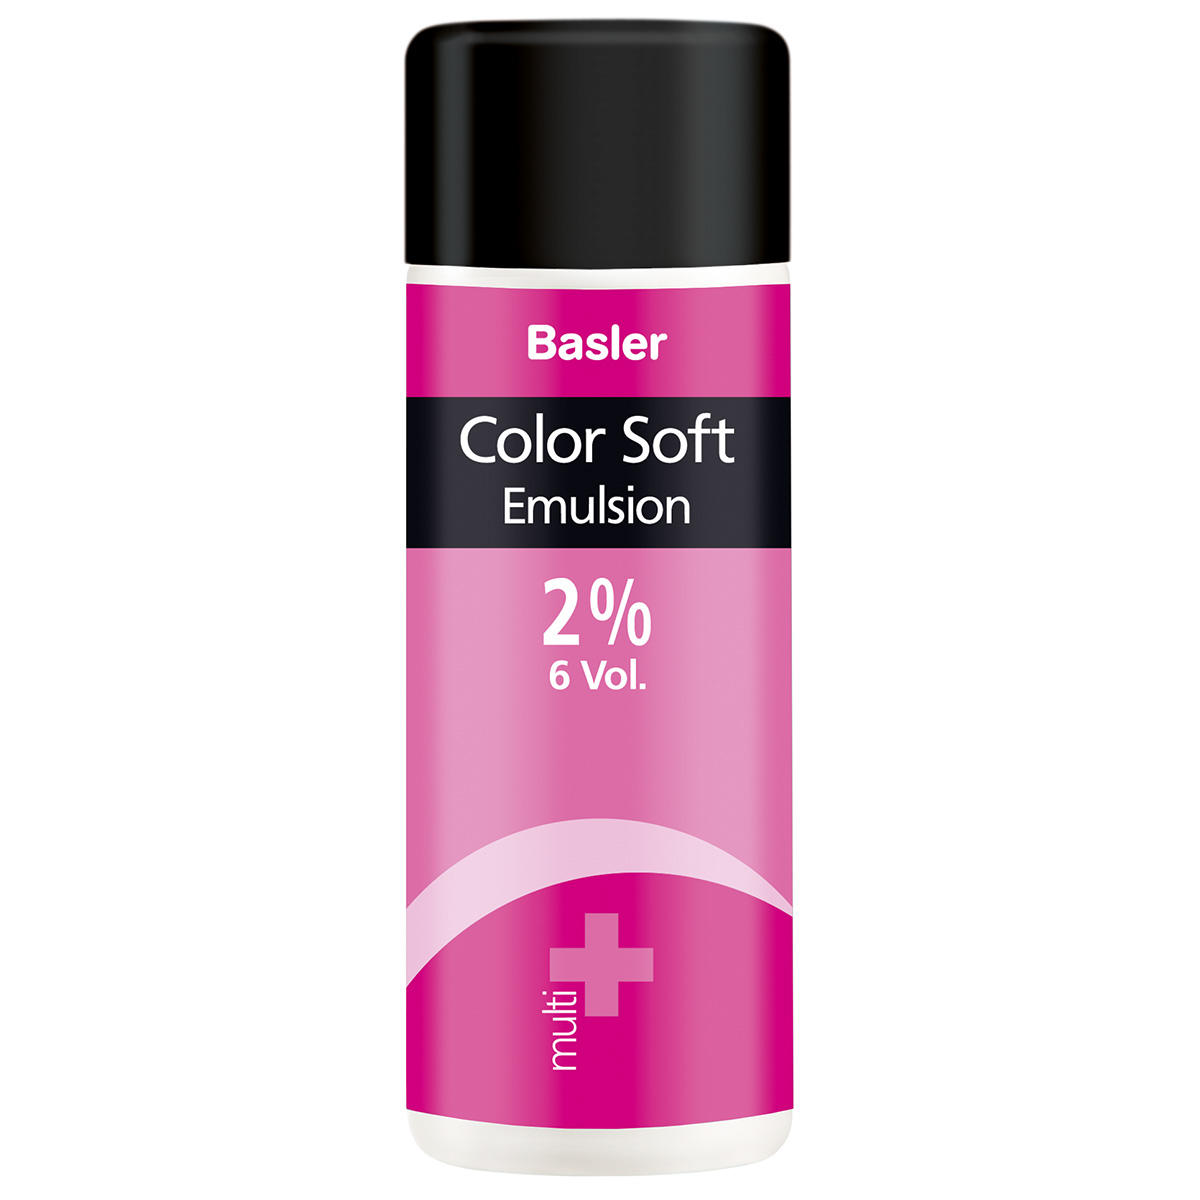 Basler Color Soft multi Emulsion 2 % - 7 Vol., Flasche 200 ml - 1